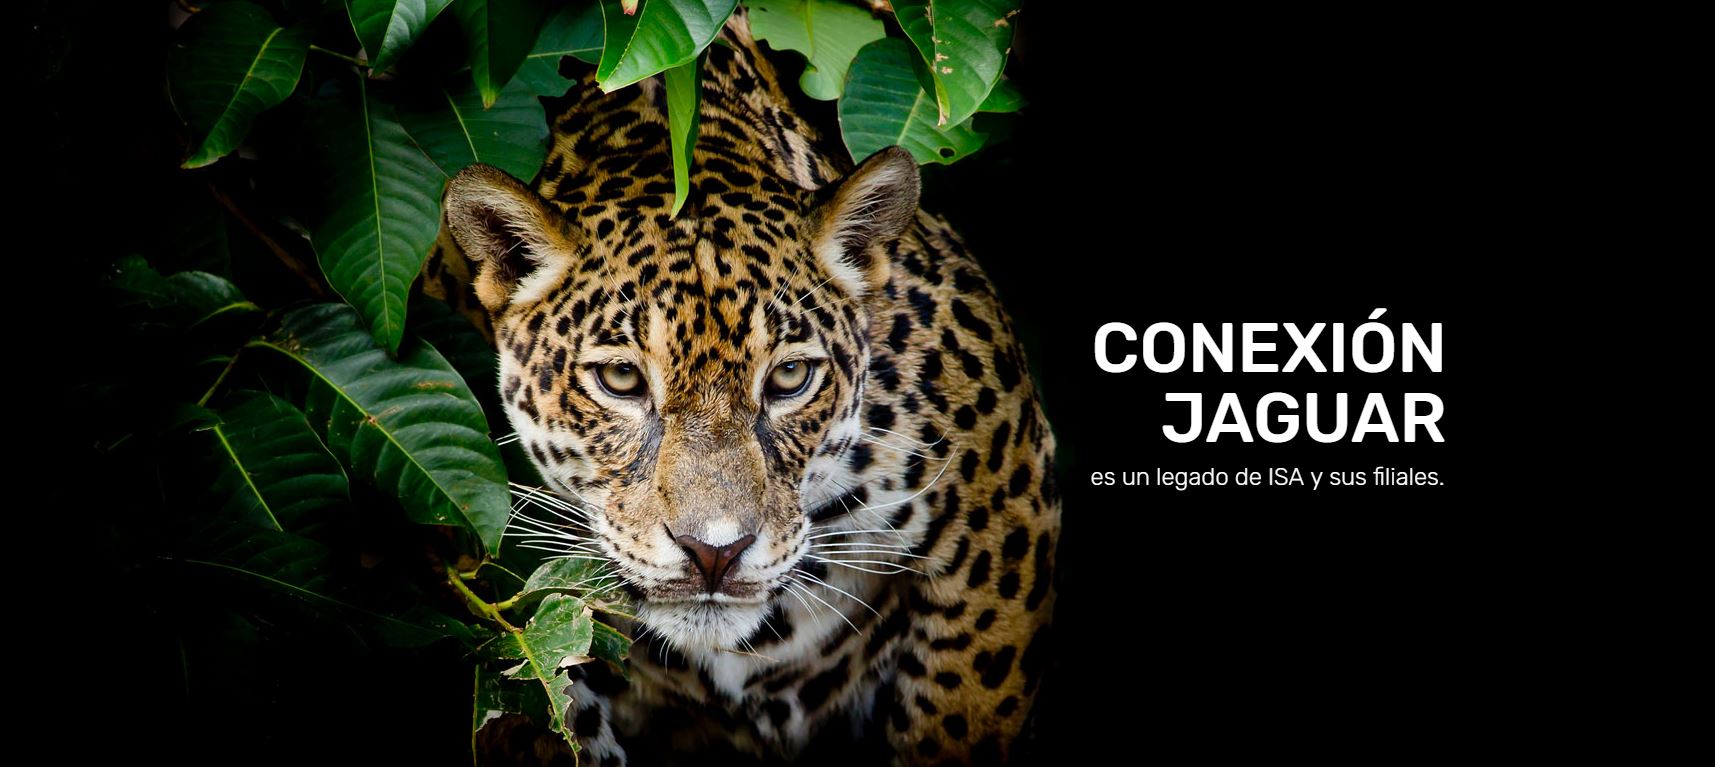 Conexion jaguar